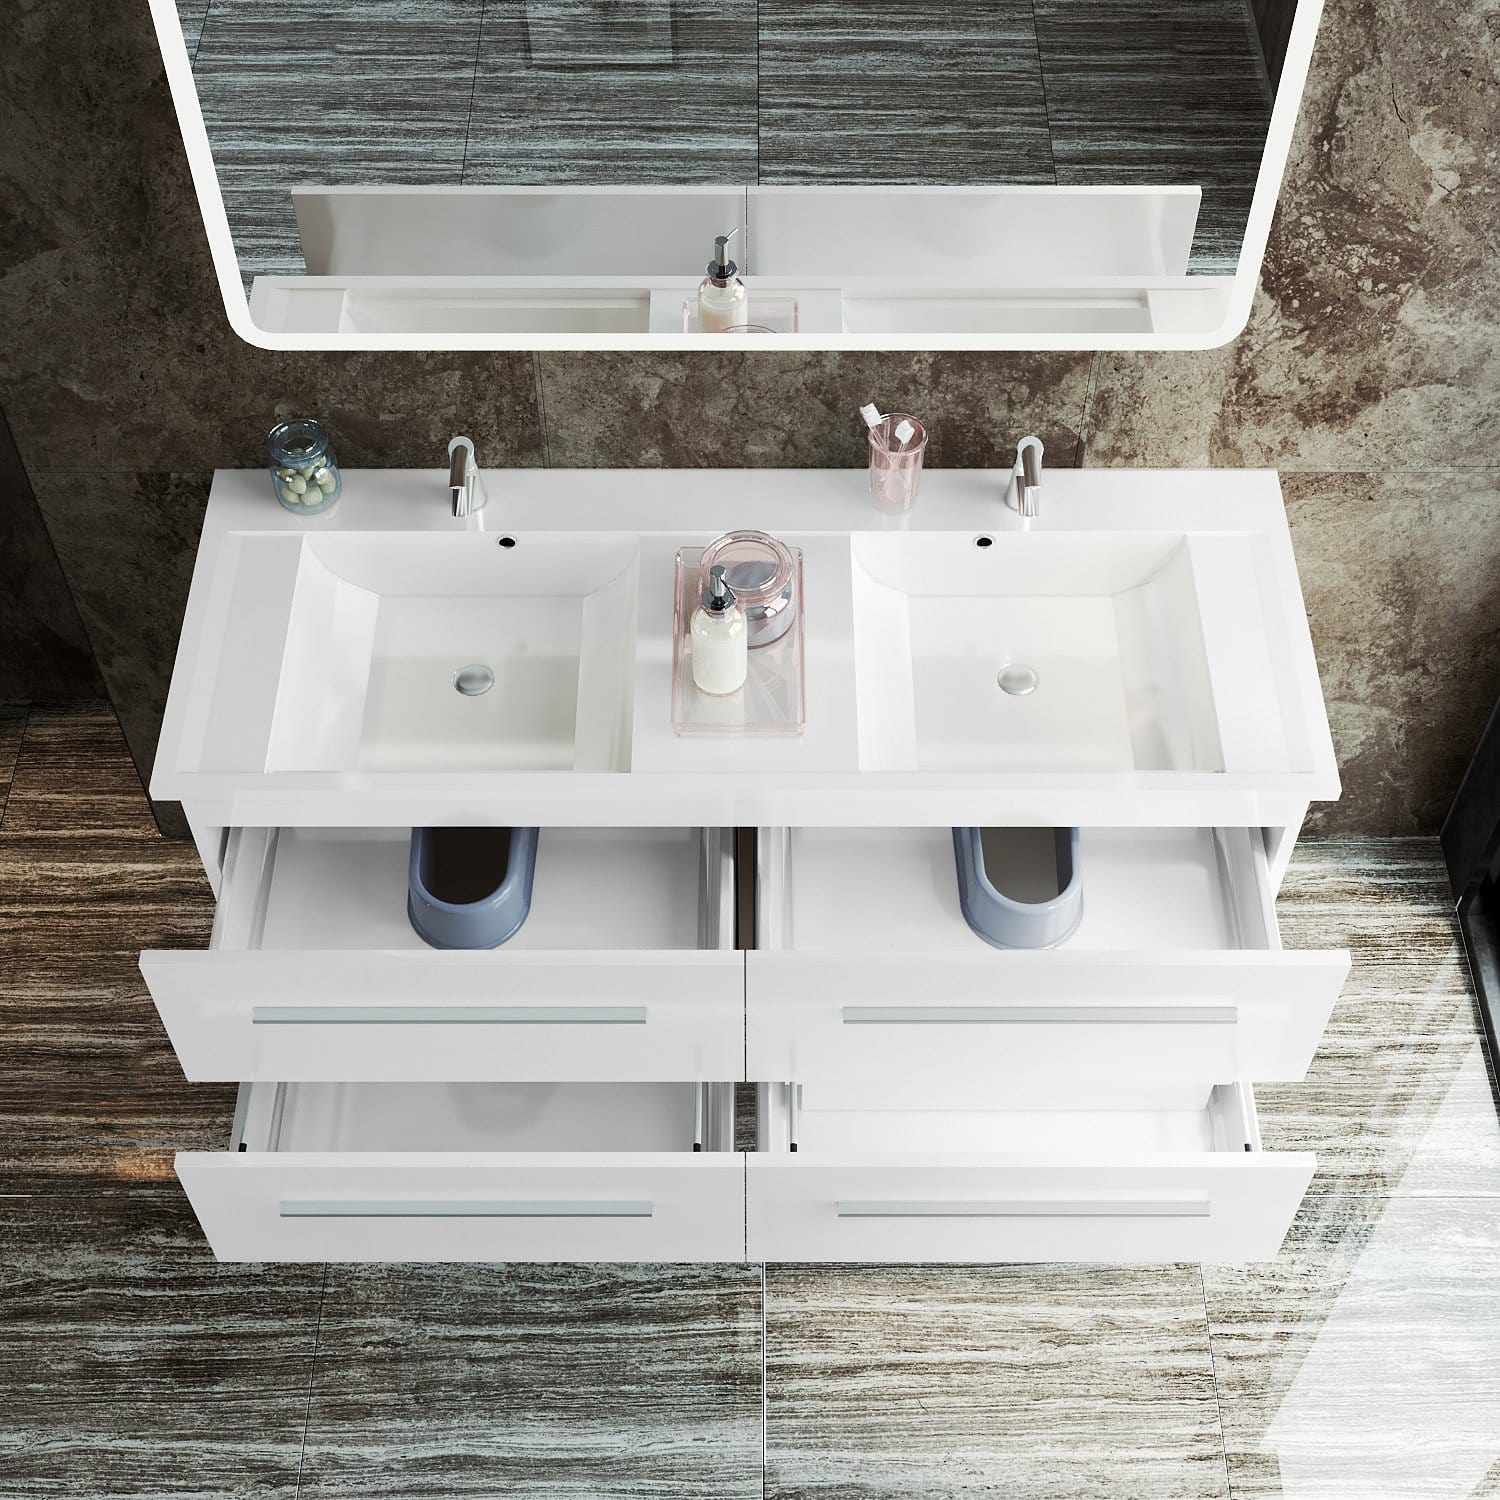 ELEGANT SHOWERS Bathroom Vanity Storage Cabinet Double Basin Sink 1205x465x498mm - Elegantshowers